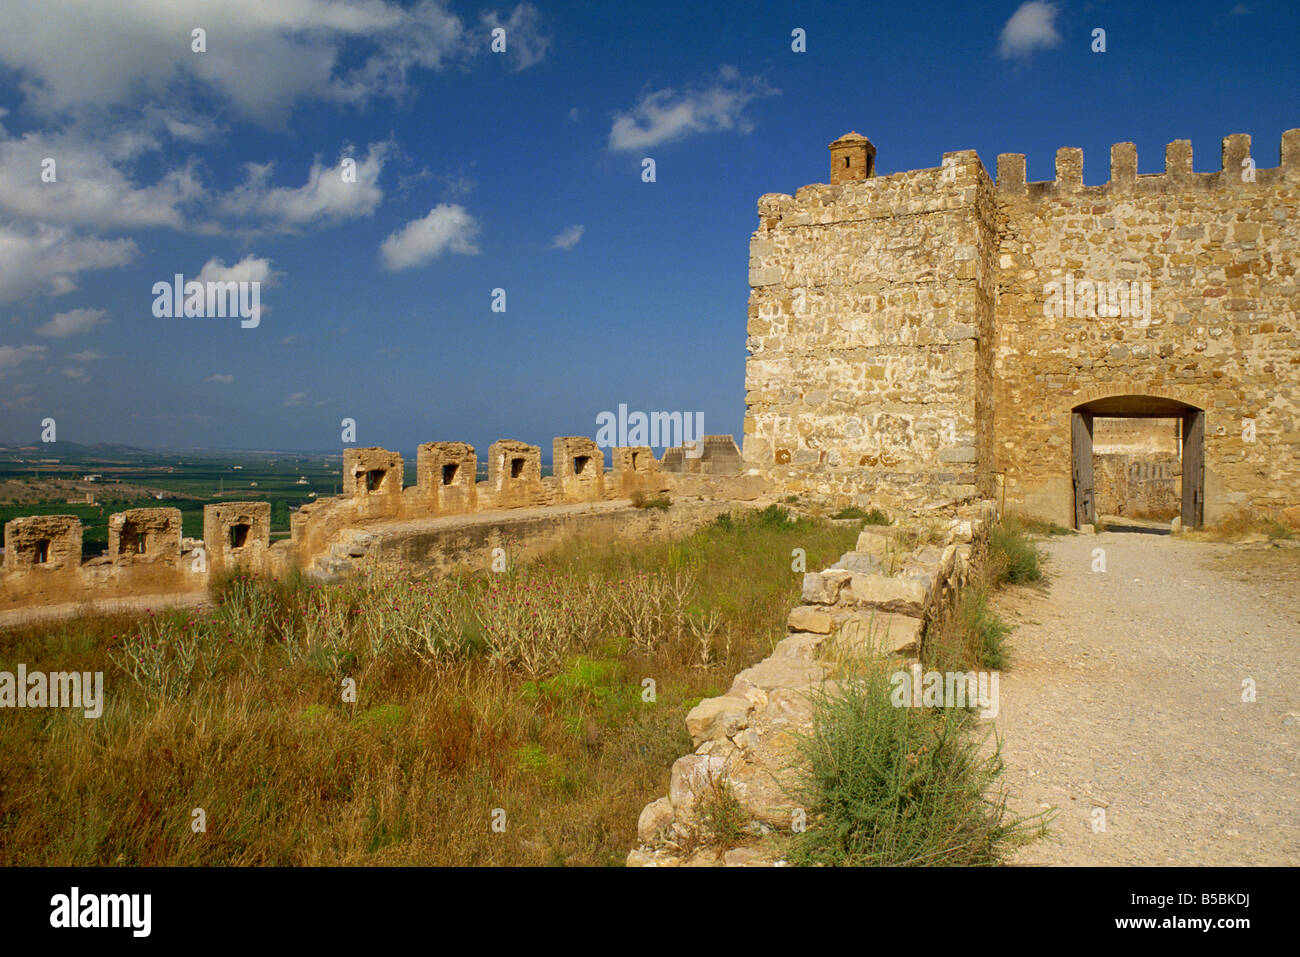 Les remparts de la ville romaine et la passerelle à Sagunto valencia espagne Levante M Busselle Banque D'Images